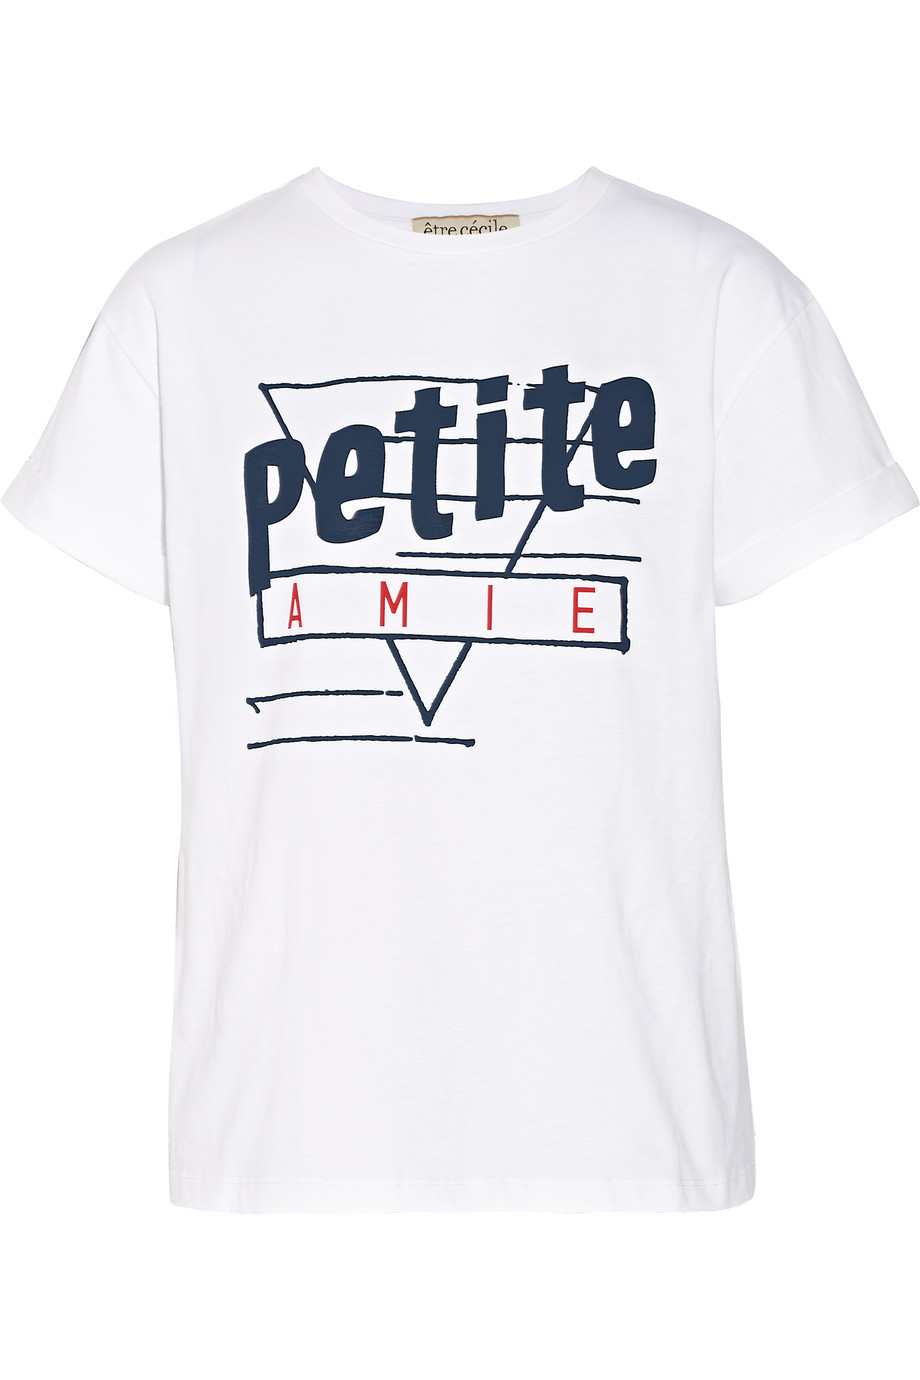 Etre Cecile Petite Amie Cotton-jersey T-shirt | ModeSens